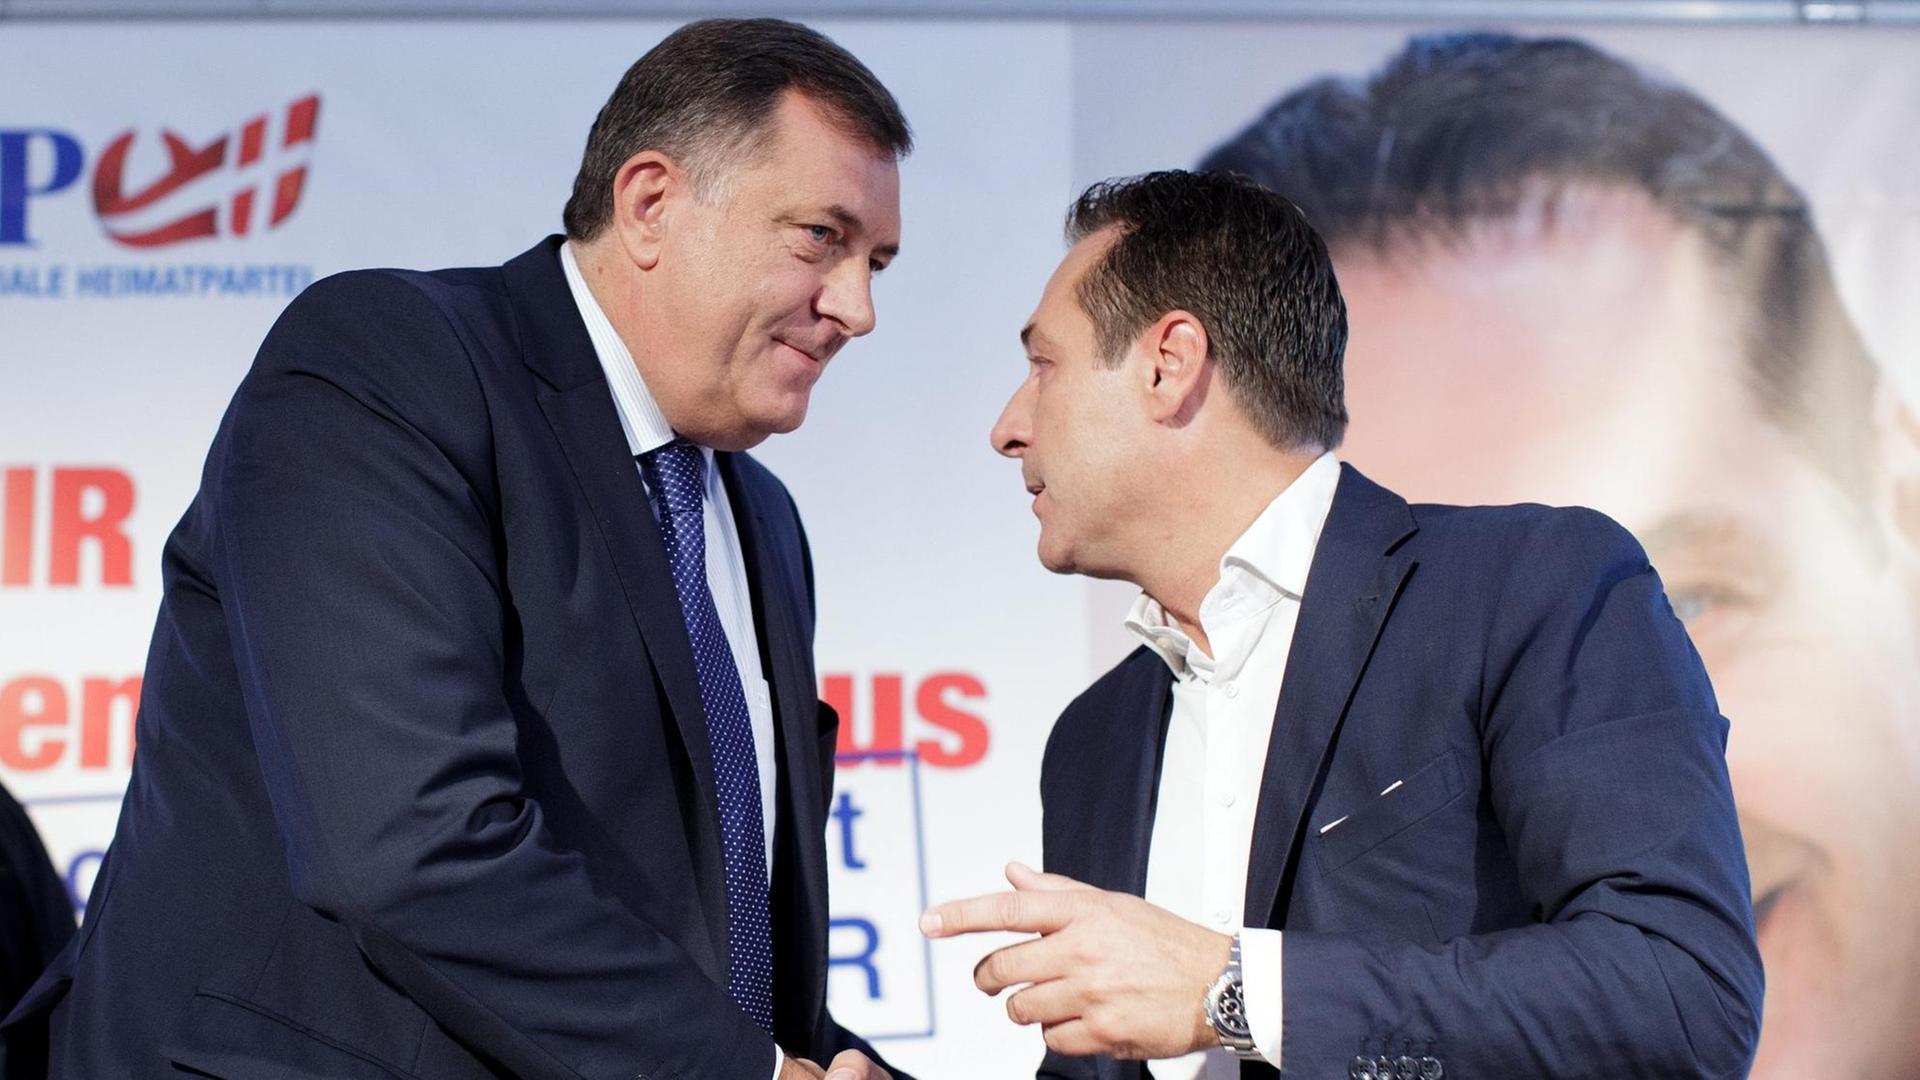 Der Präsident der Republika Srpska, Milorad Dodik und der Vorsitzende der FPÖ, Heinz-Christian Strache, schütteln sich bei einer Pressekonferenz die Hände.